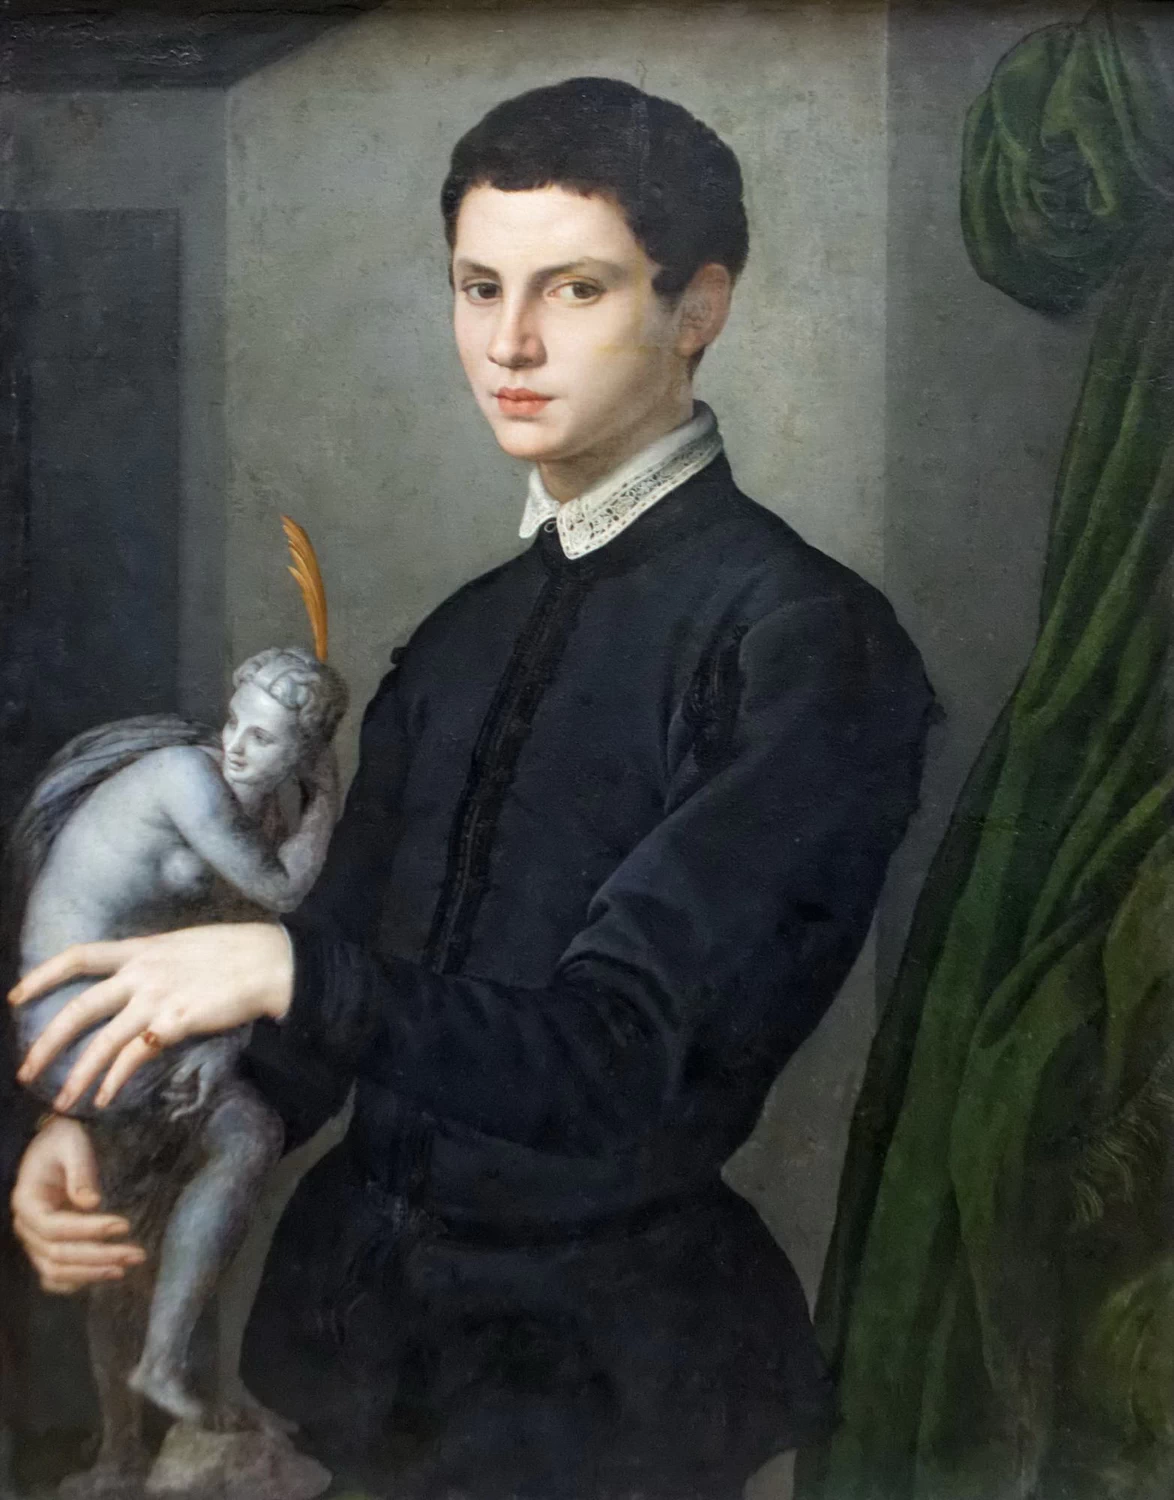 118-Ritratto di giovane con statuetta-Musée du Louvre, Paris